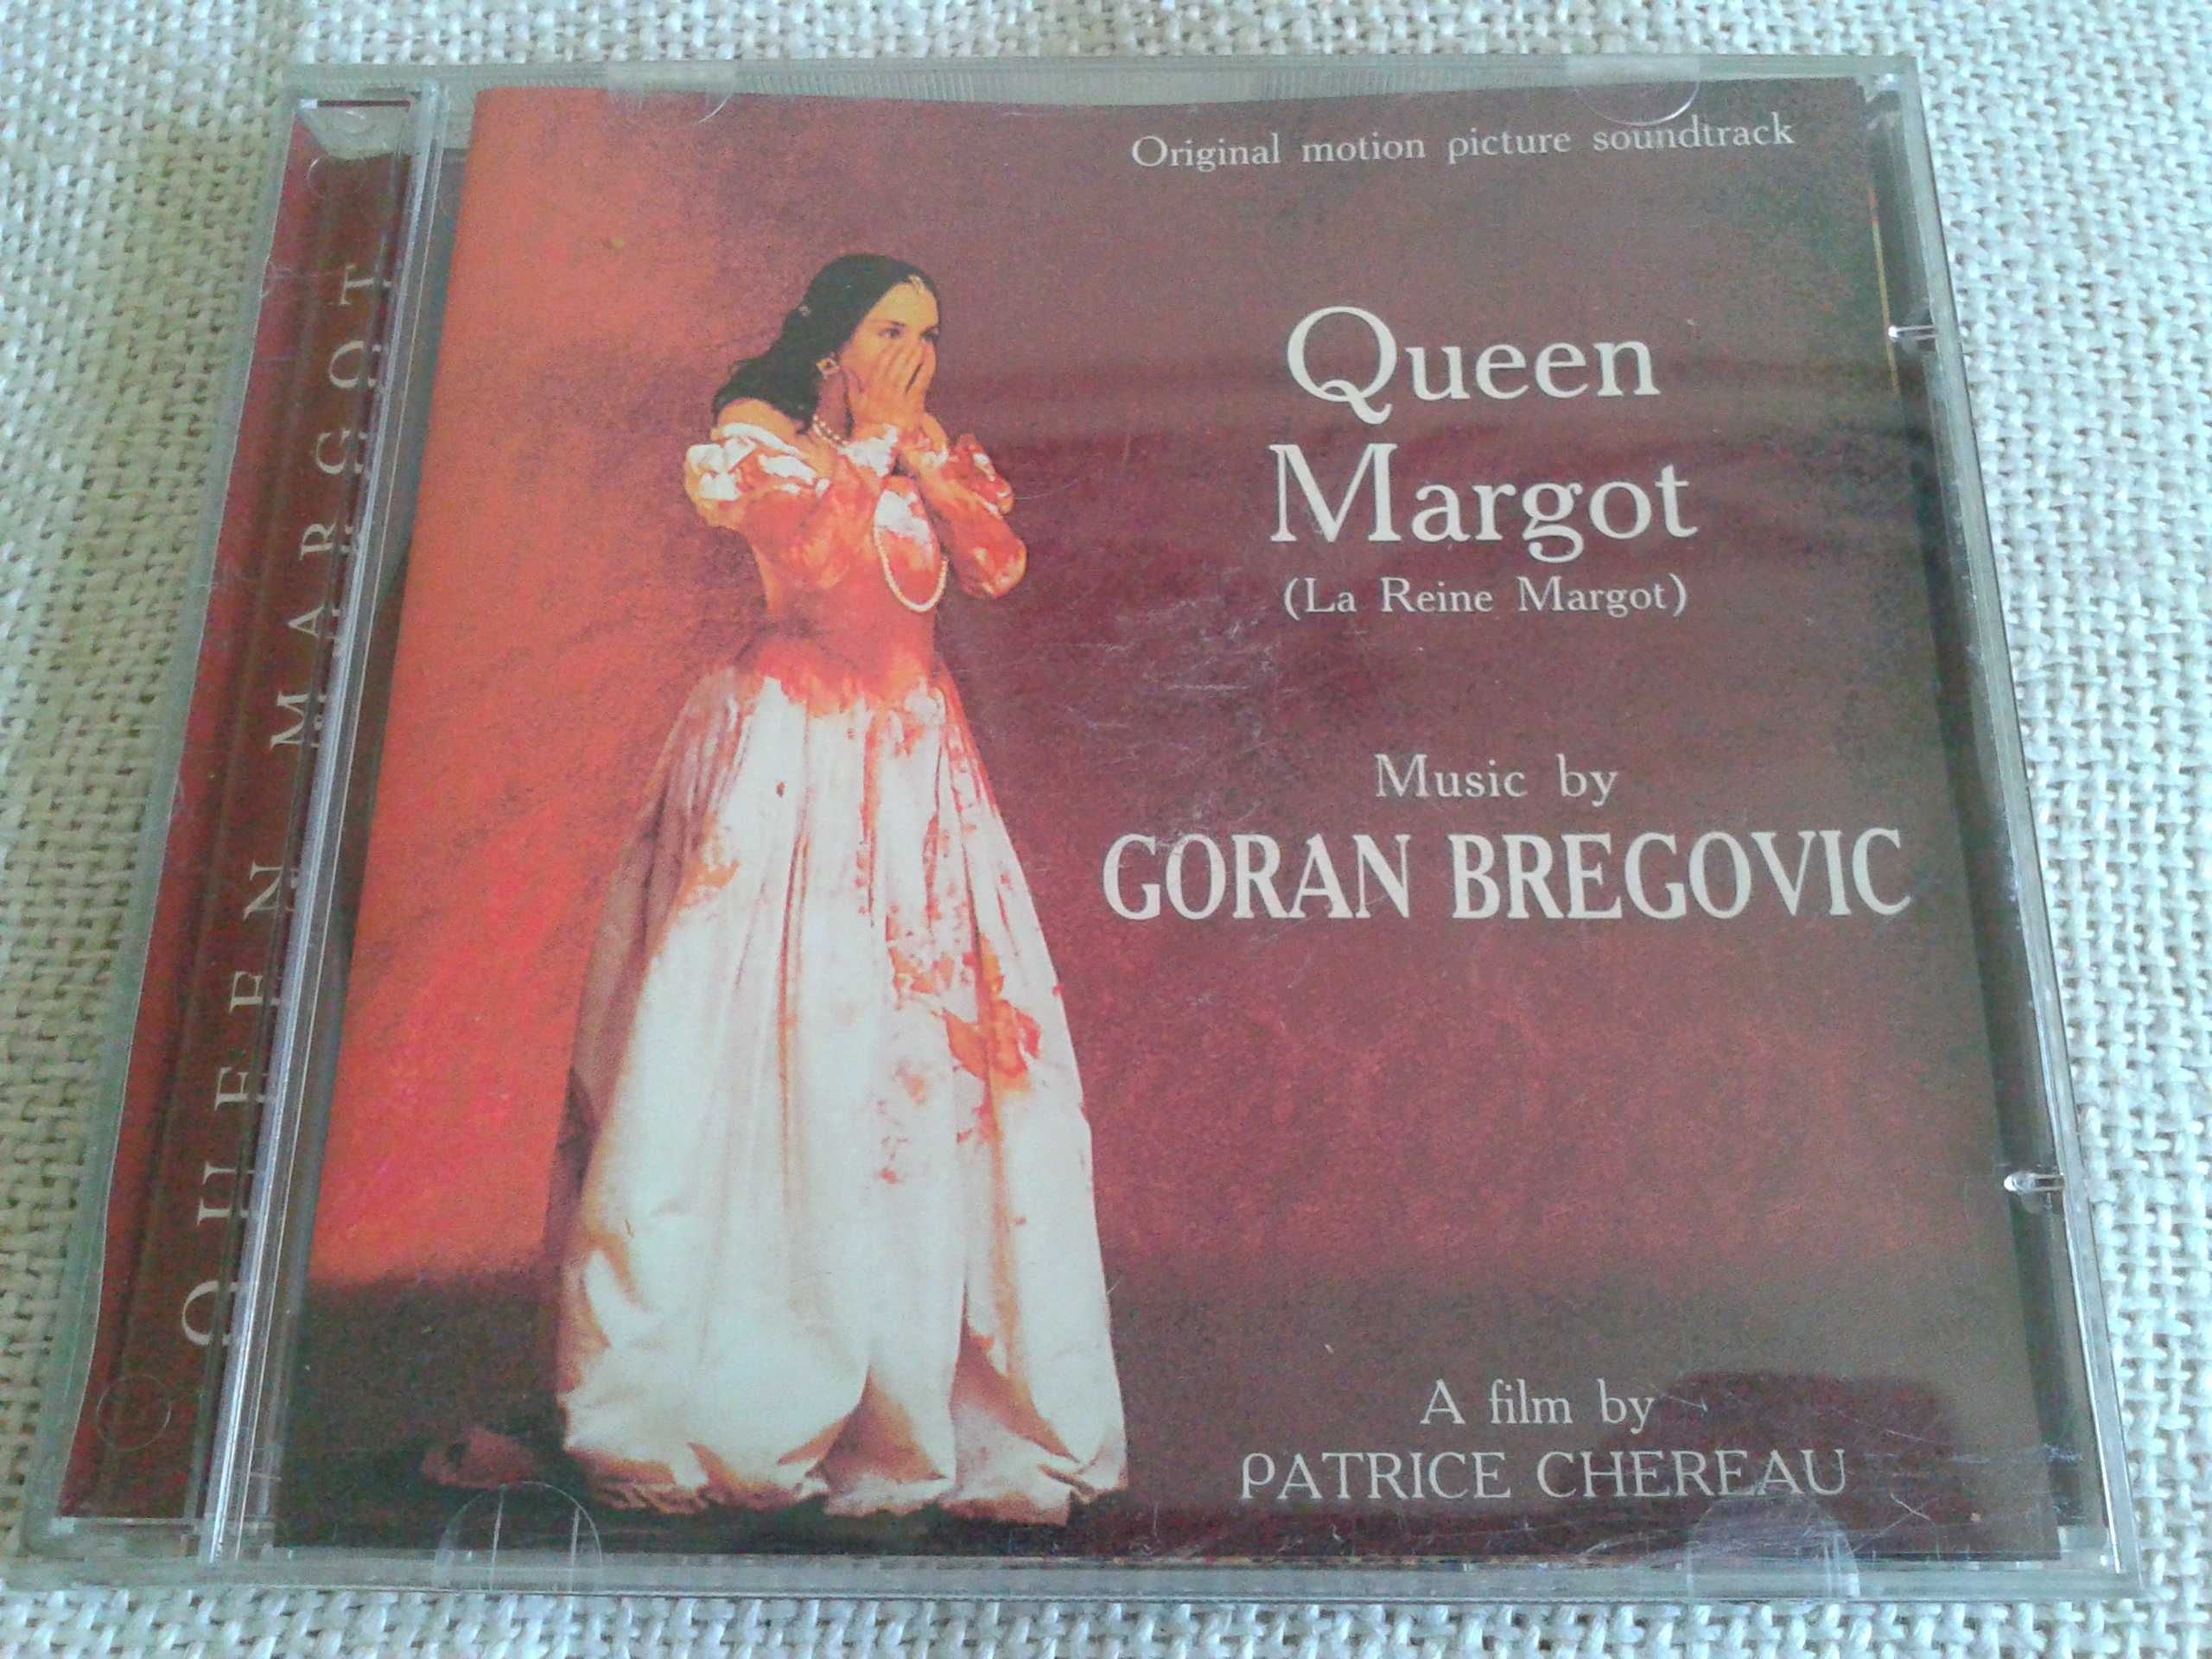 Goran Bregovic - Queen Margot CD